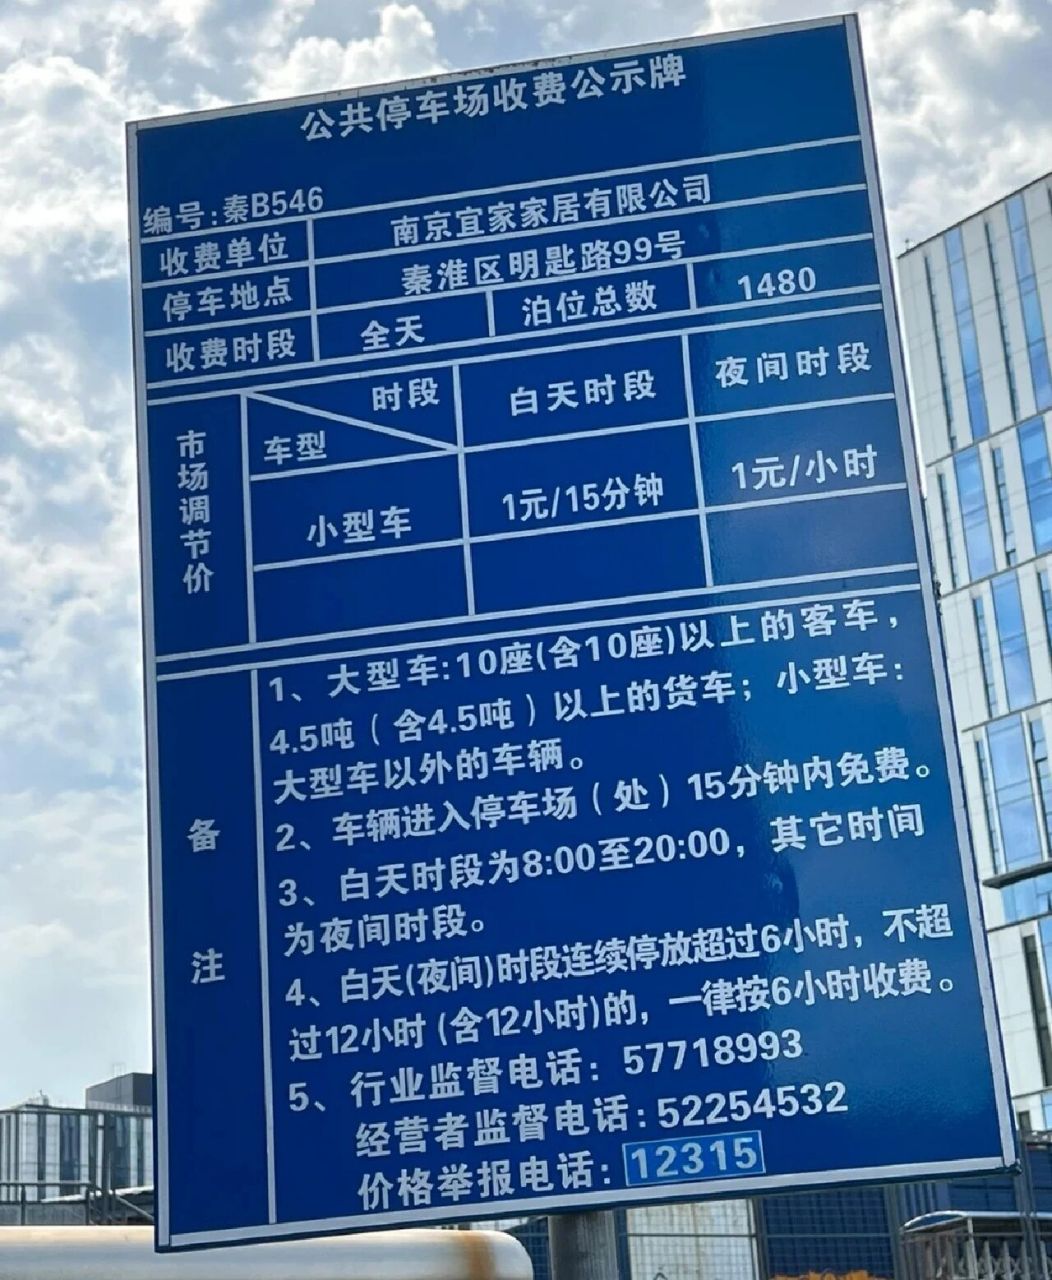 南京停车场停车费 宜家:十点开门,前两小时免费,后面每15分钟1块